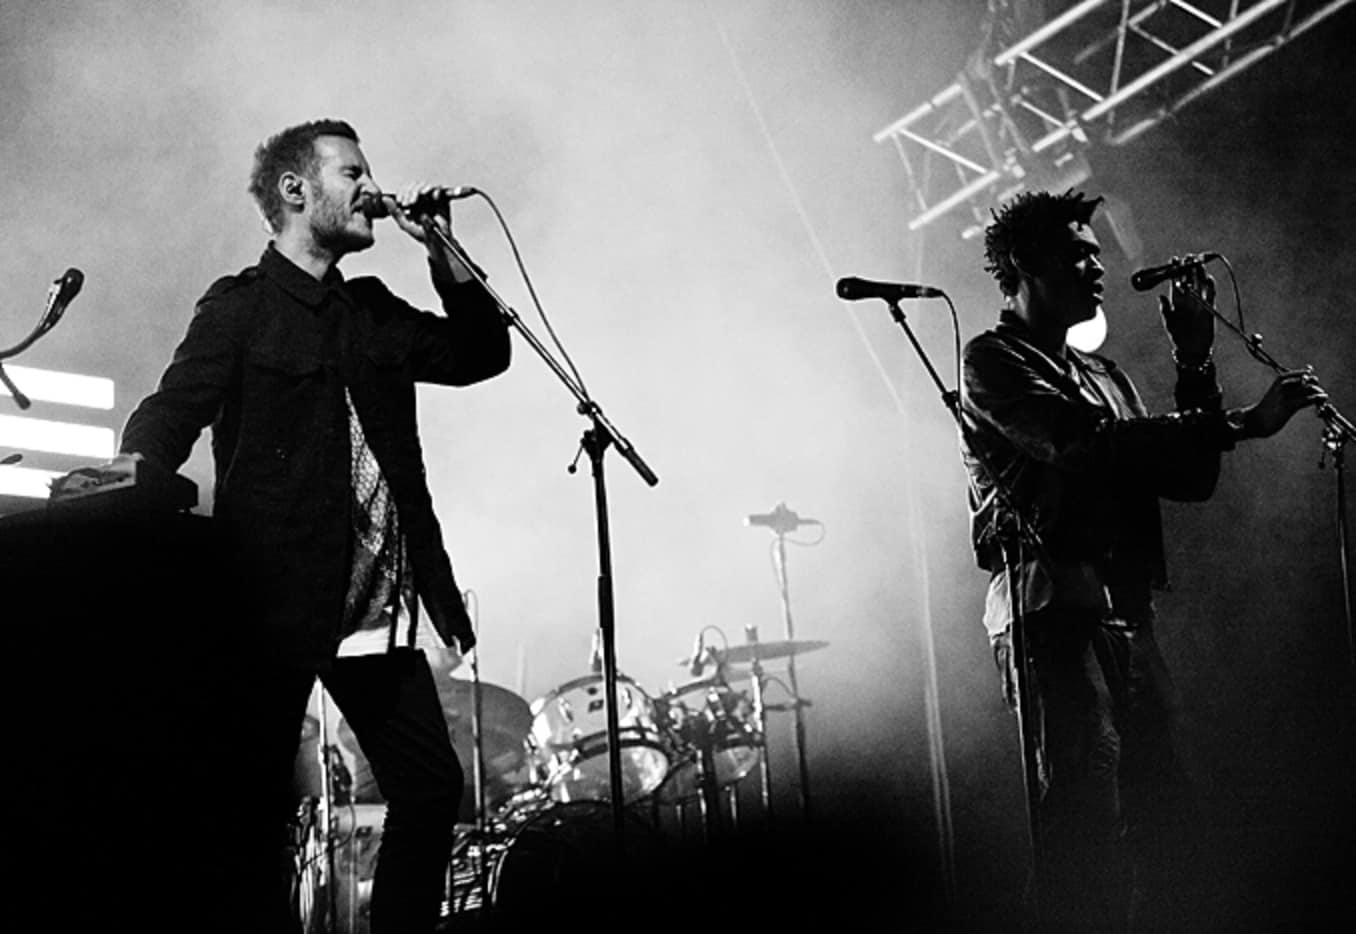 Massive Attack groundbreaking 90's album ‘Mezzanine’ among Discogs' Top 10 best albums in history